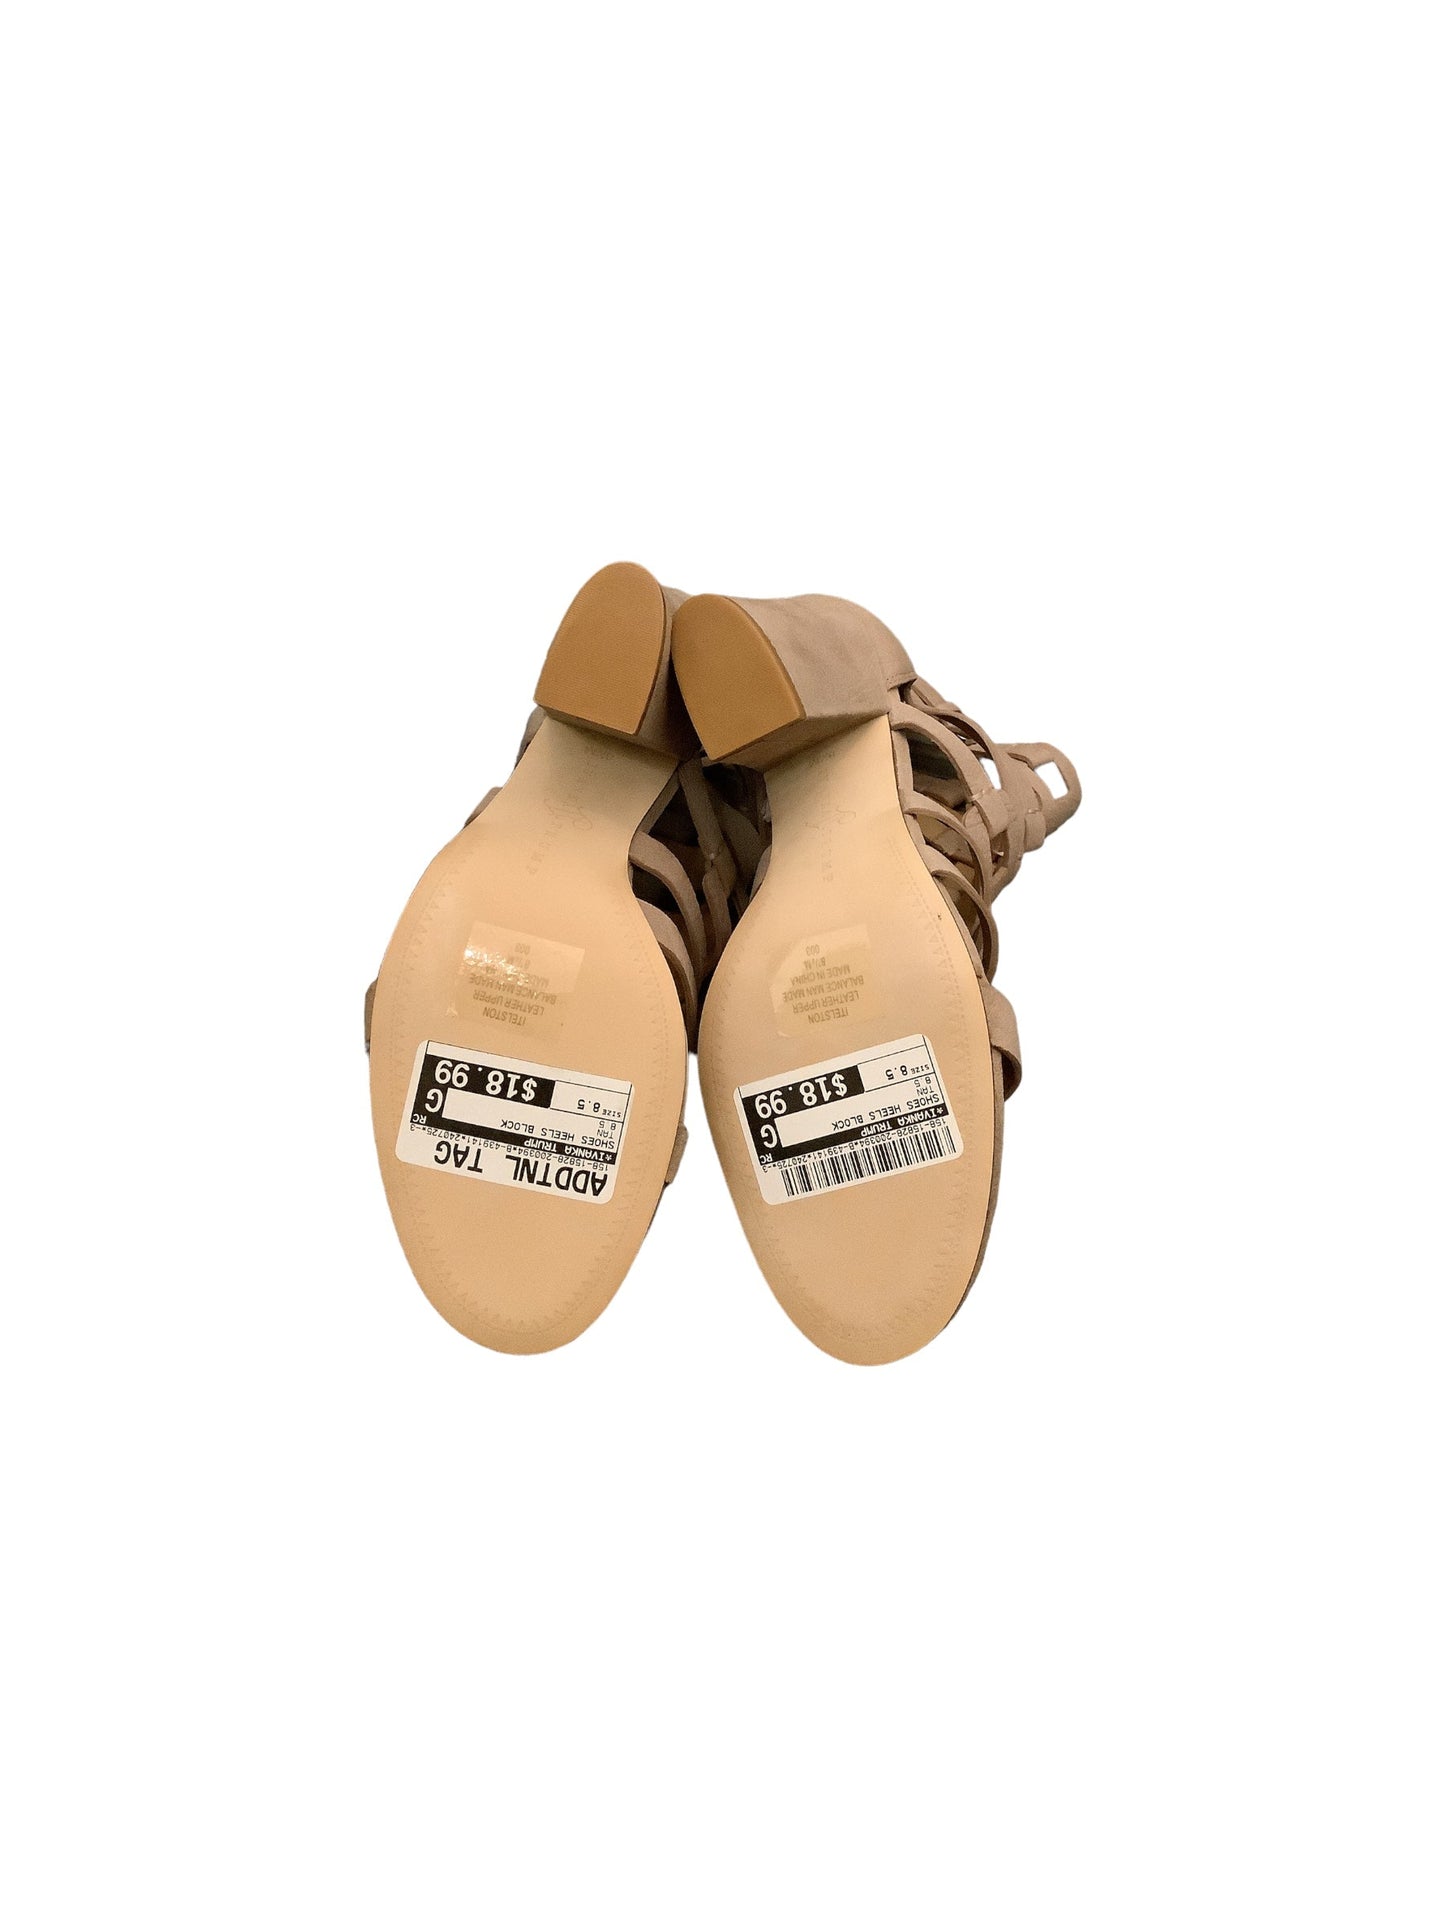 Tan Shoes Heels Block Ivanka Trump, Size 8.5